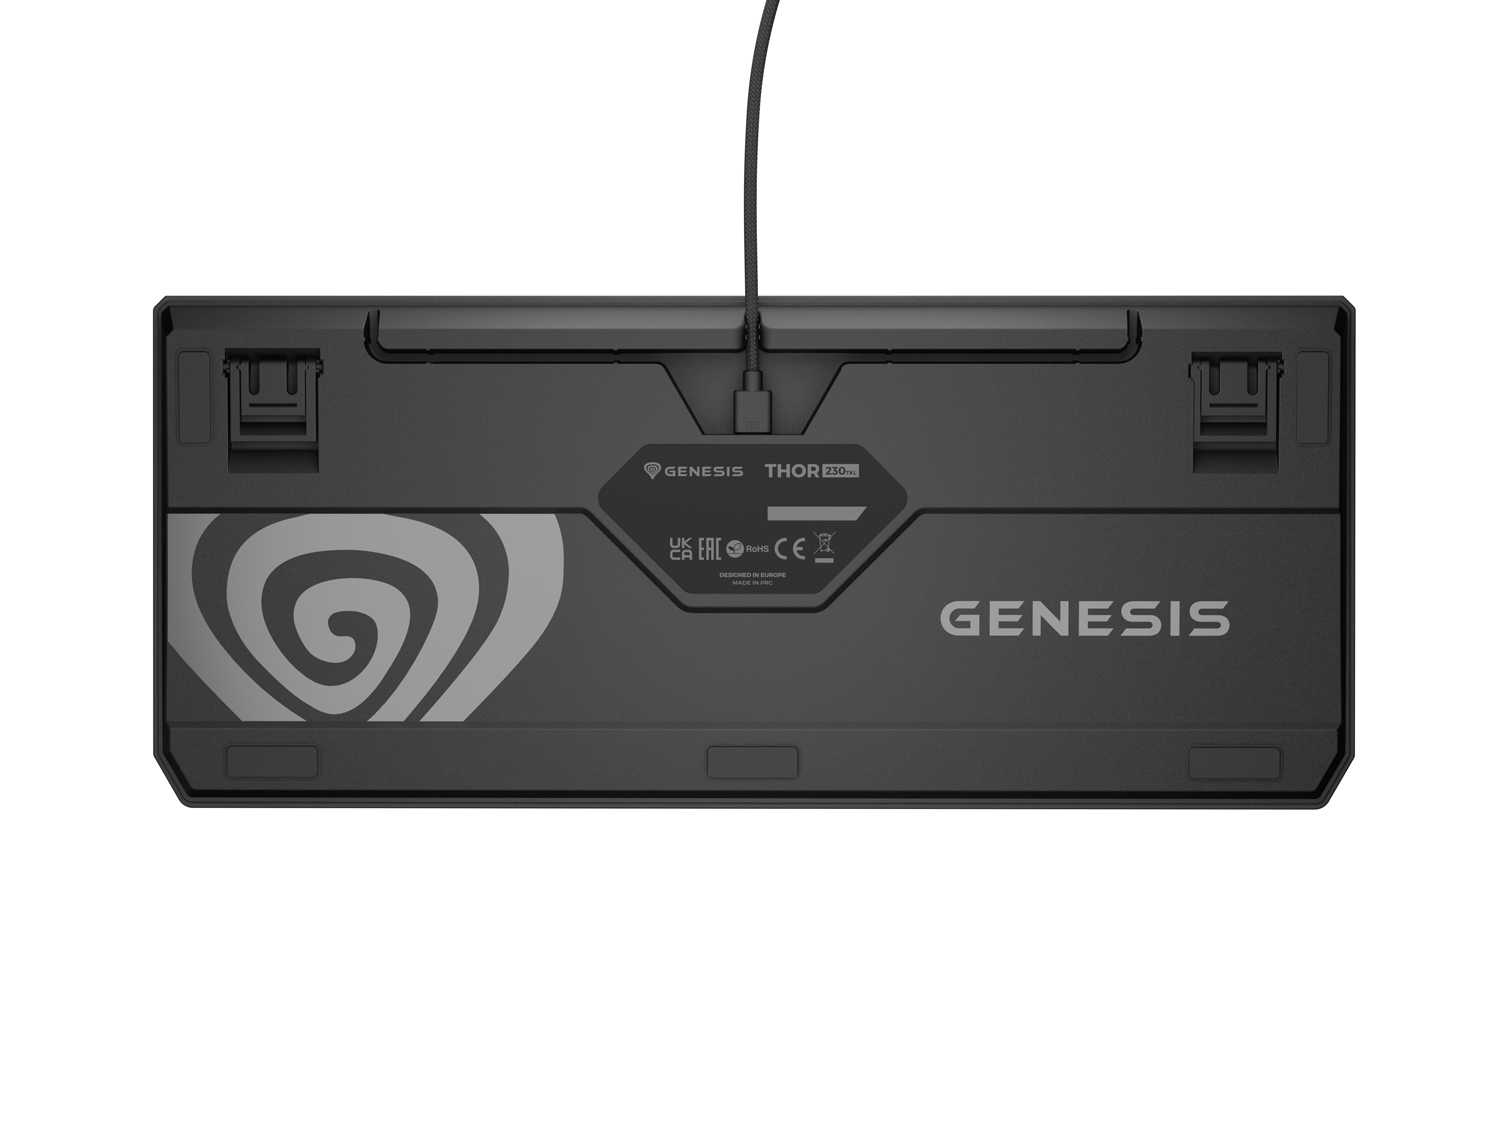 Genesis herná klávesnica THOR 230/ TKL/ RGB/ Outemu Red/ Drôtová USB/ US layout/ Čierna 